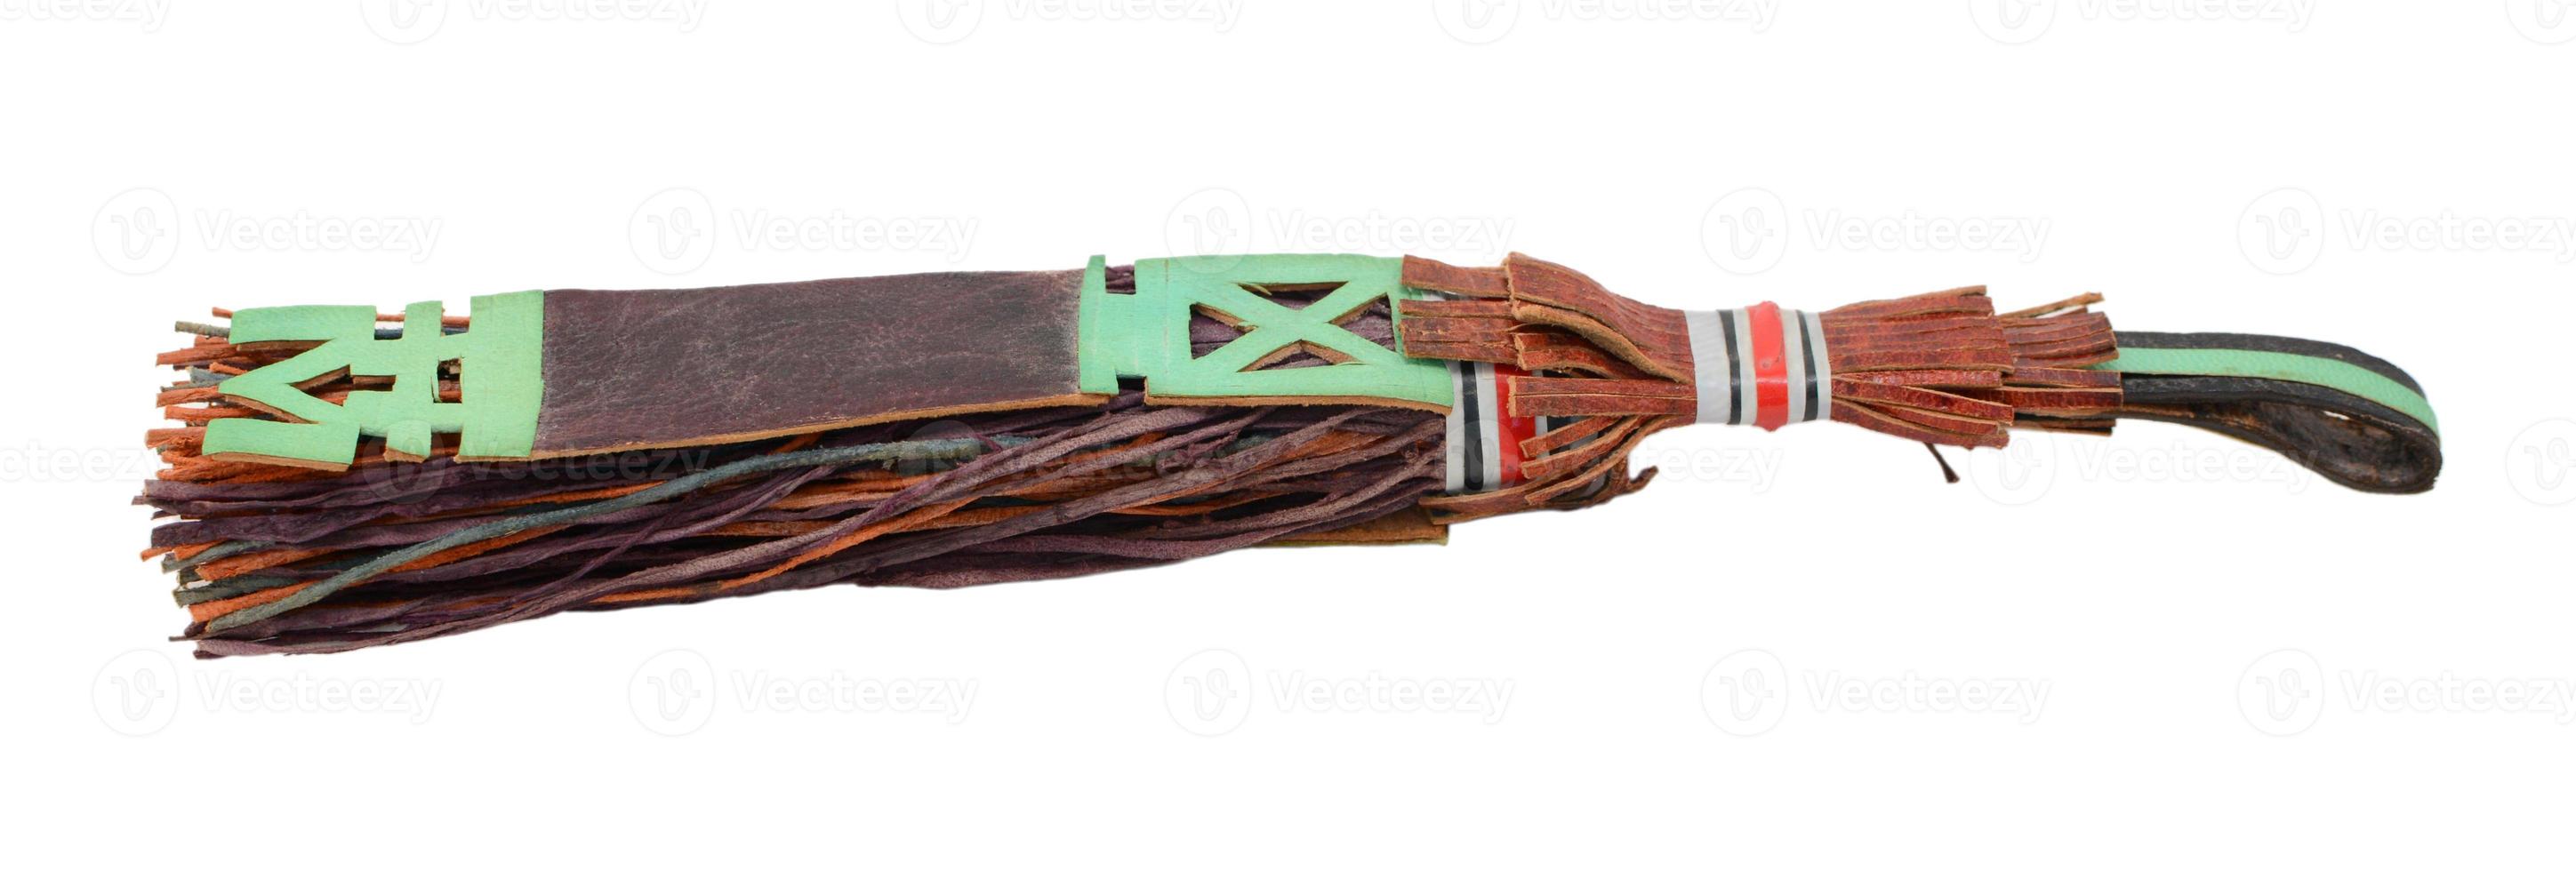 borla de couro tradicional usada por tuaregs no mali, áfrica foto